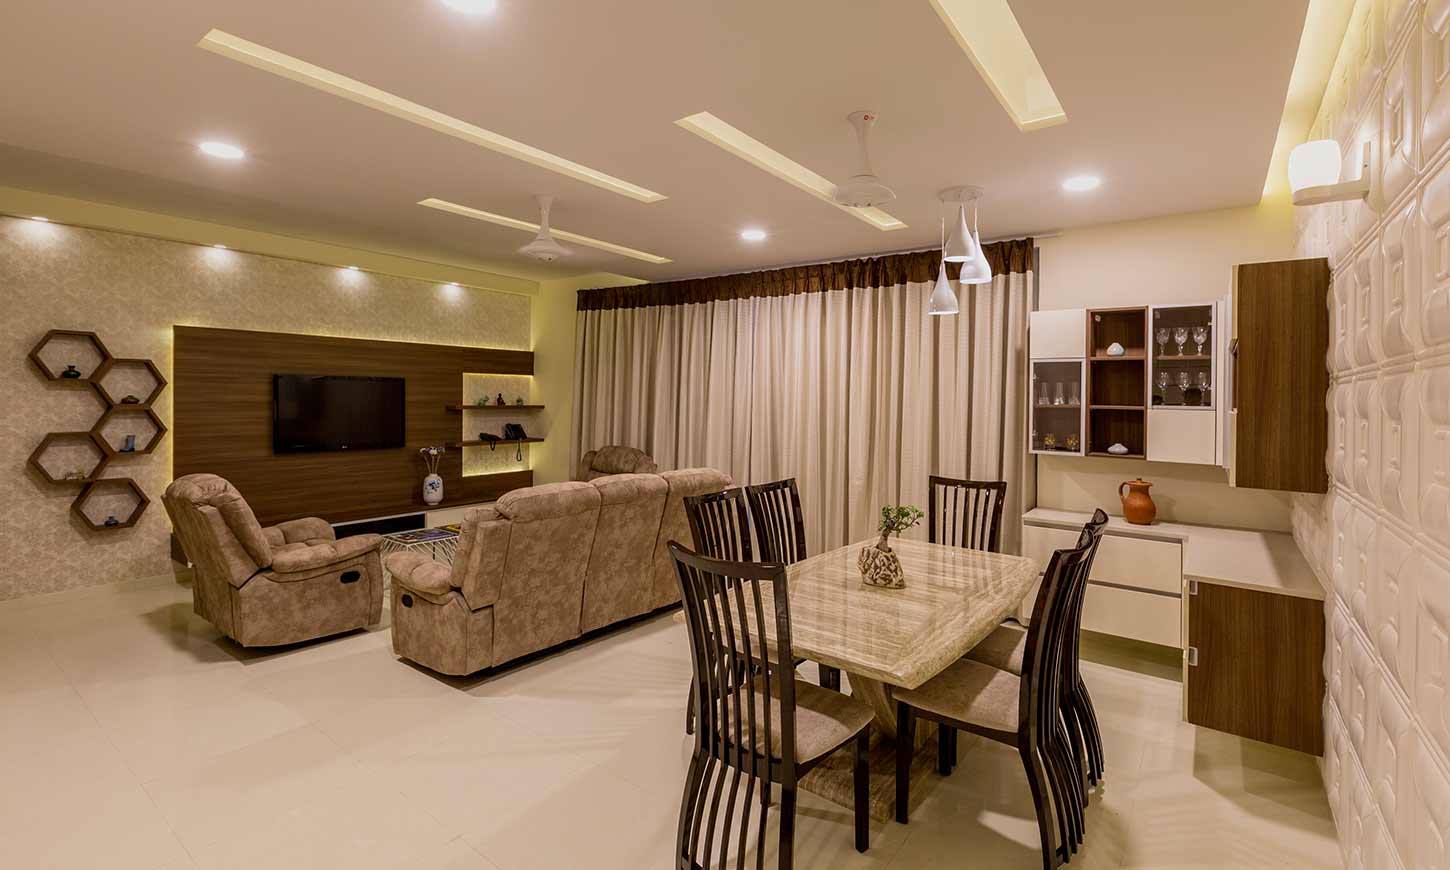 Apartments interior designers in bangalore for living cum dingng room